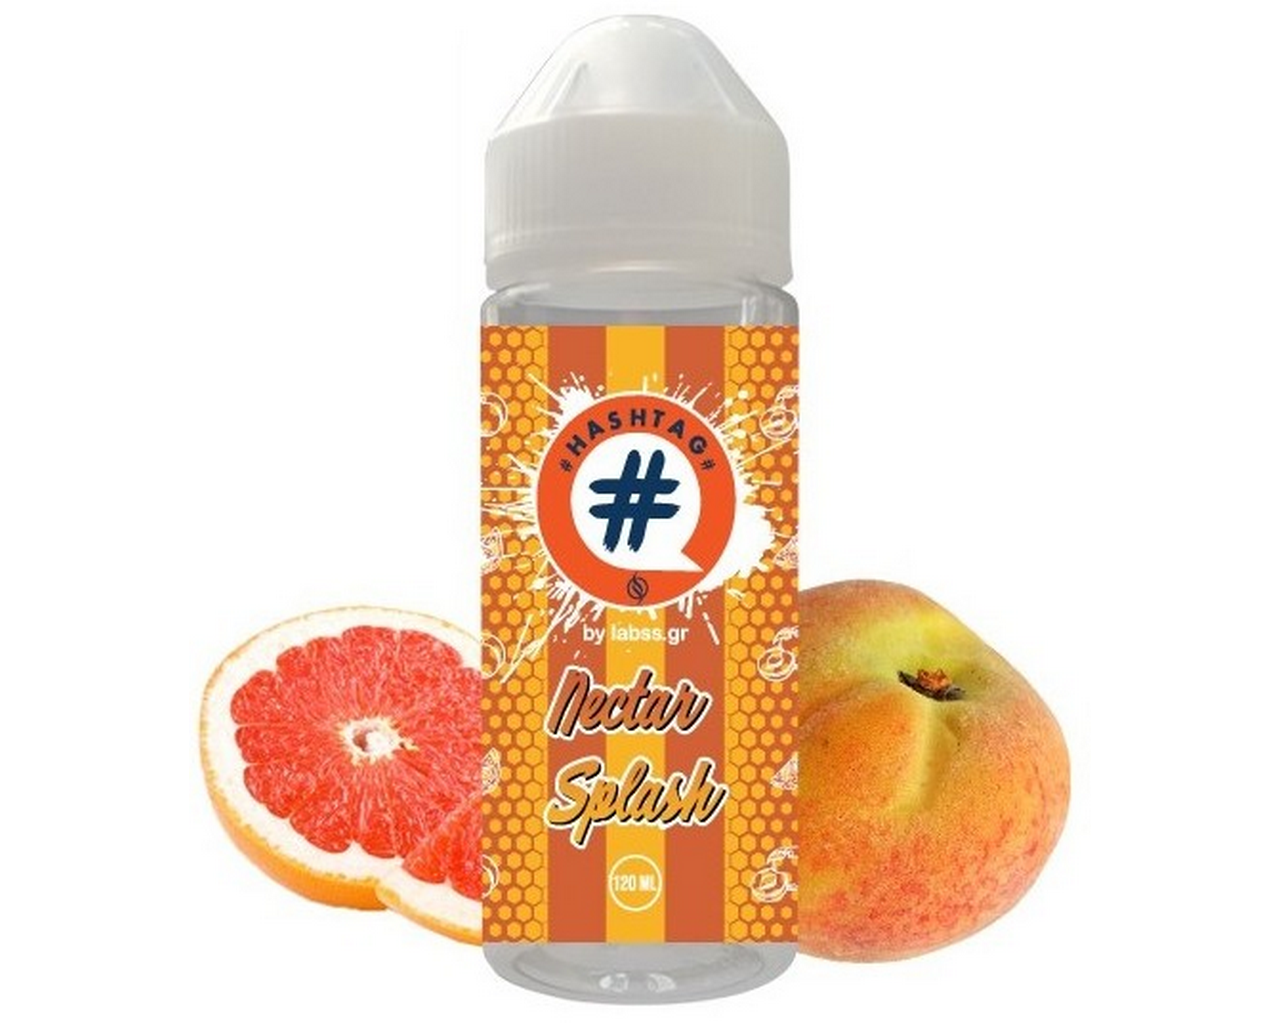 Hashtag Flavorshot Nectar Splash 24/120ml